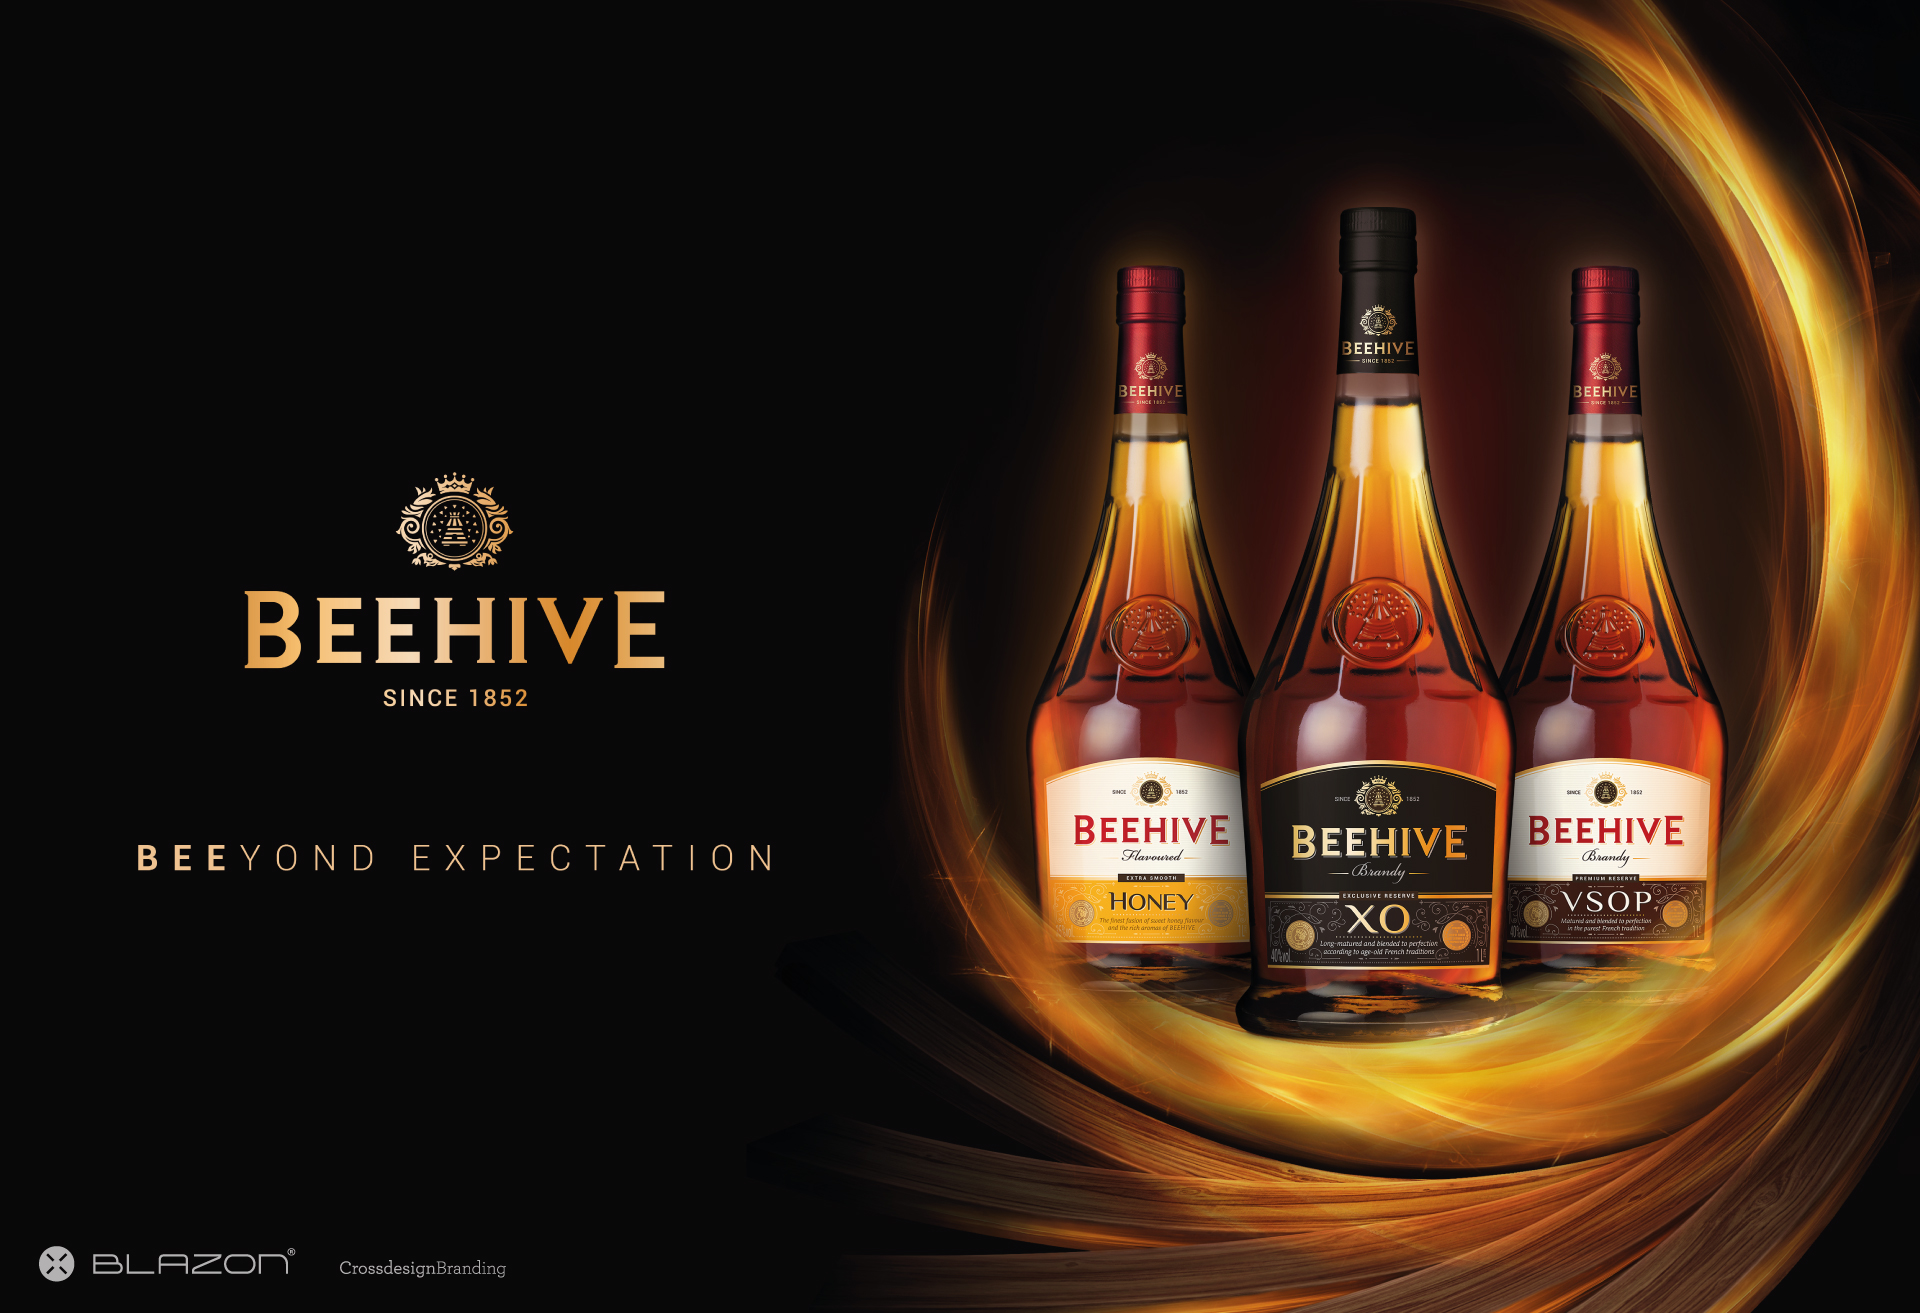 BLAZON / Crossdesign crée le nouveau territoire visuel de la marque internationale de brandy Beehive.